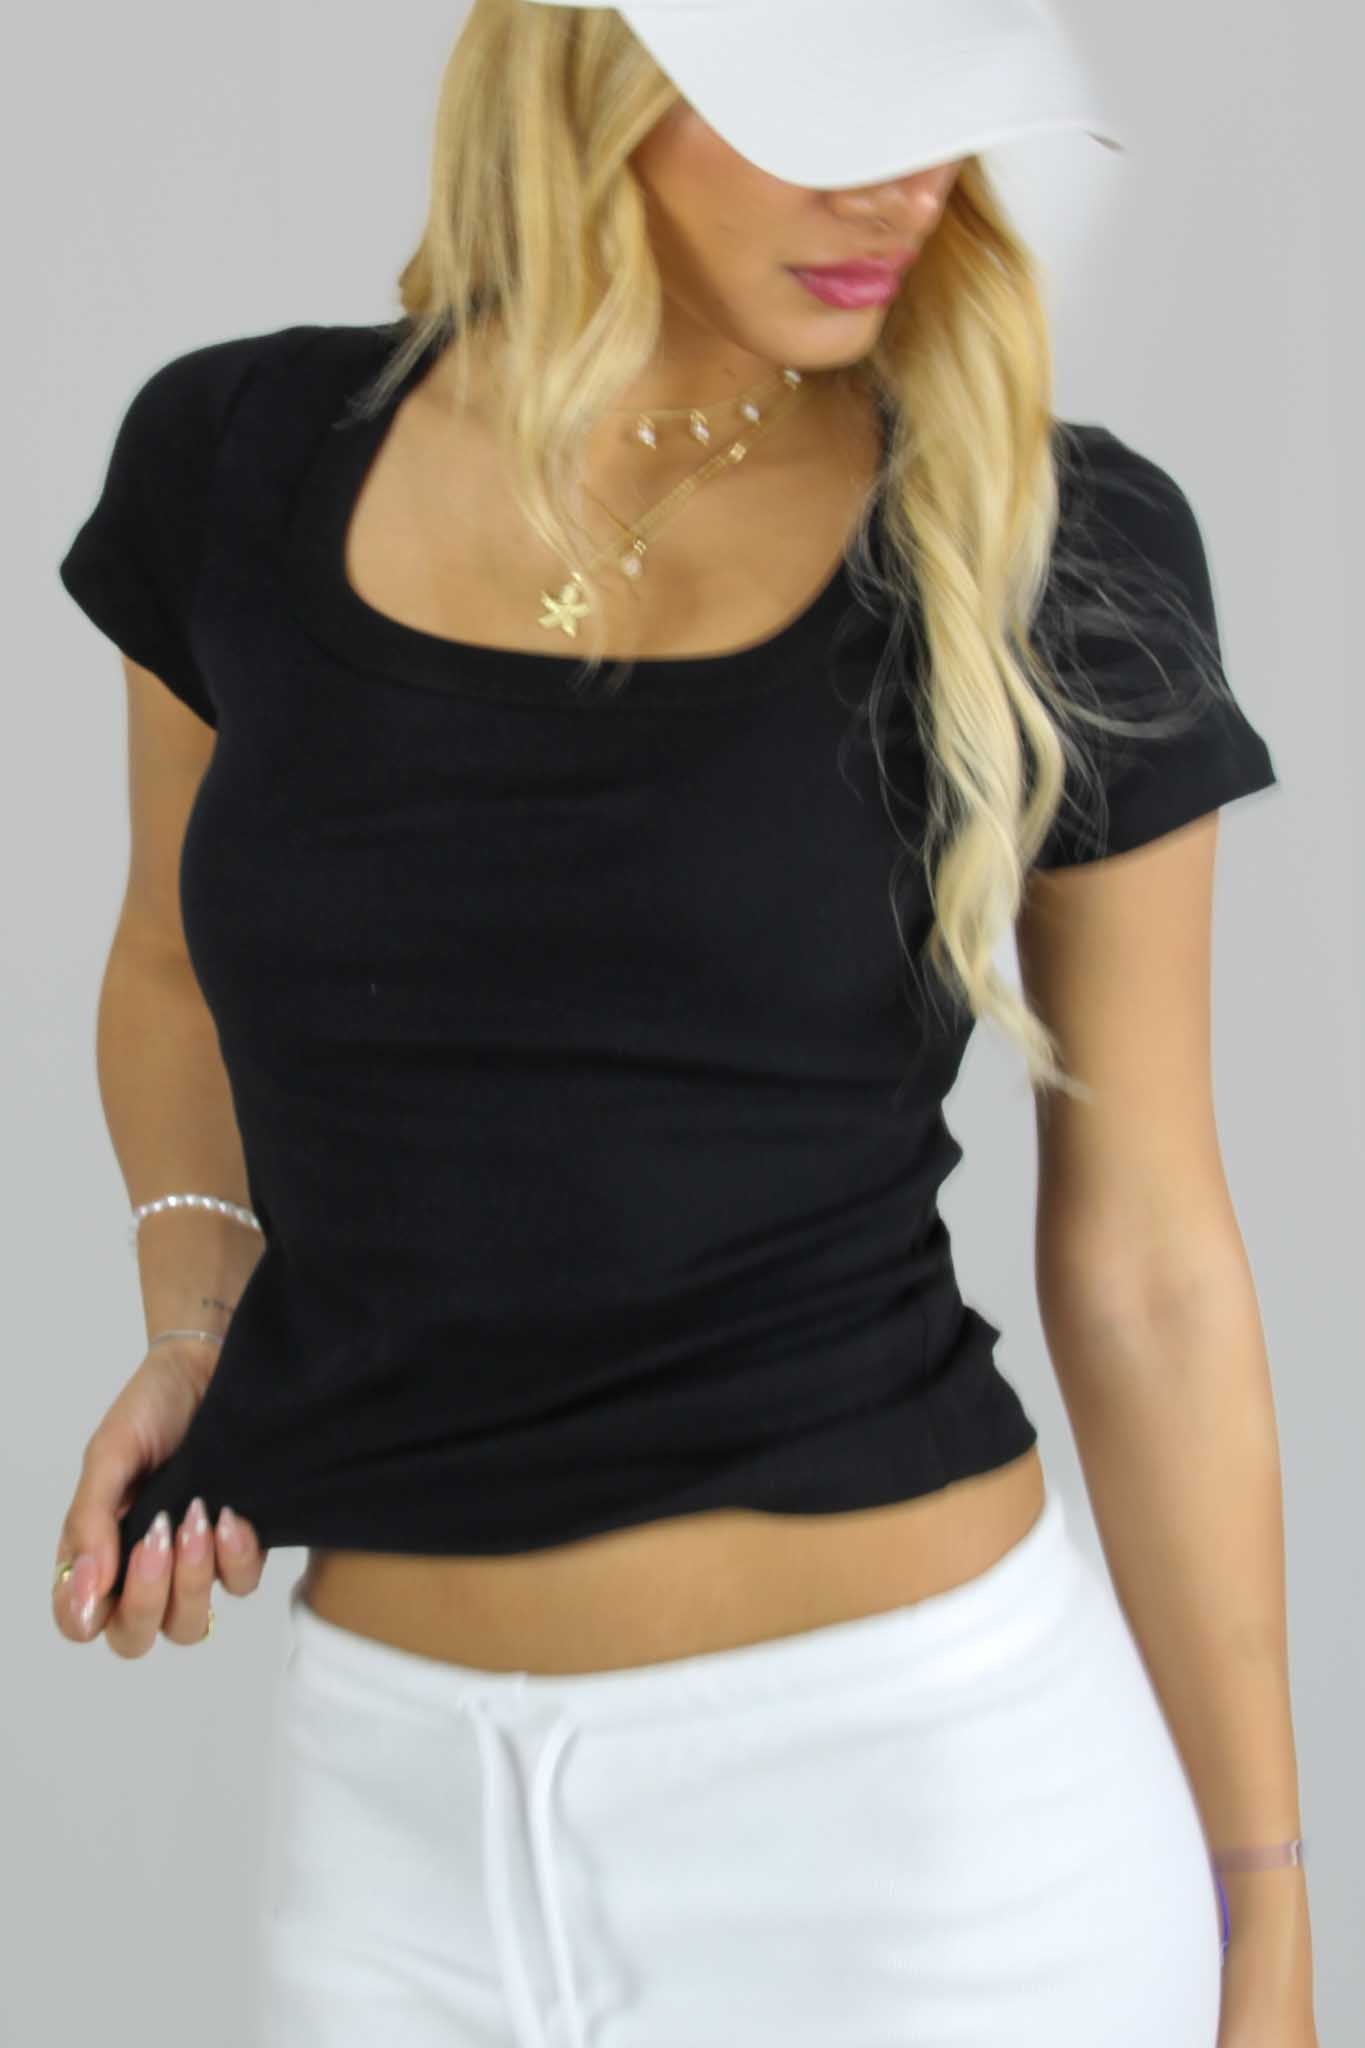 חולצת טי קצרה צווארון מרובע Jas בצבע שחור לנשים-Daniel-1-נאקו